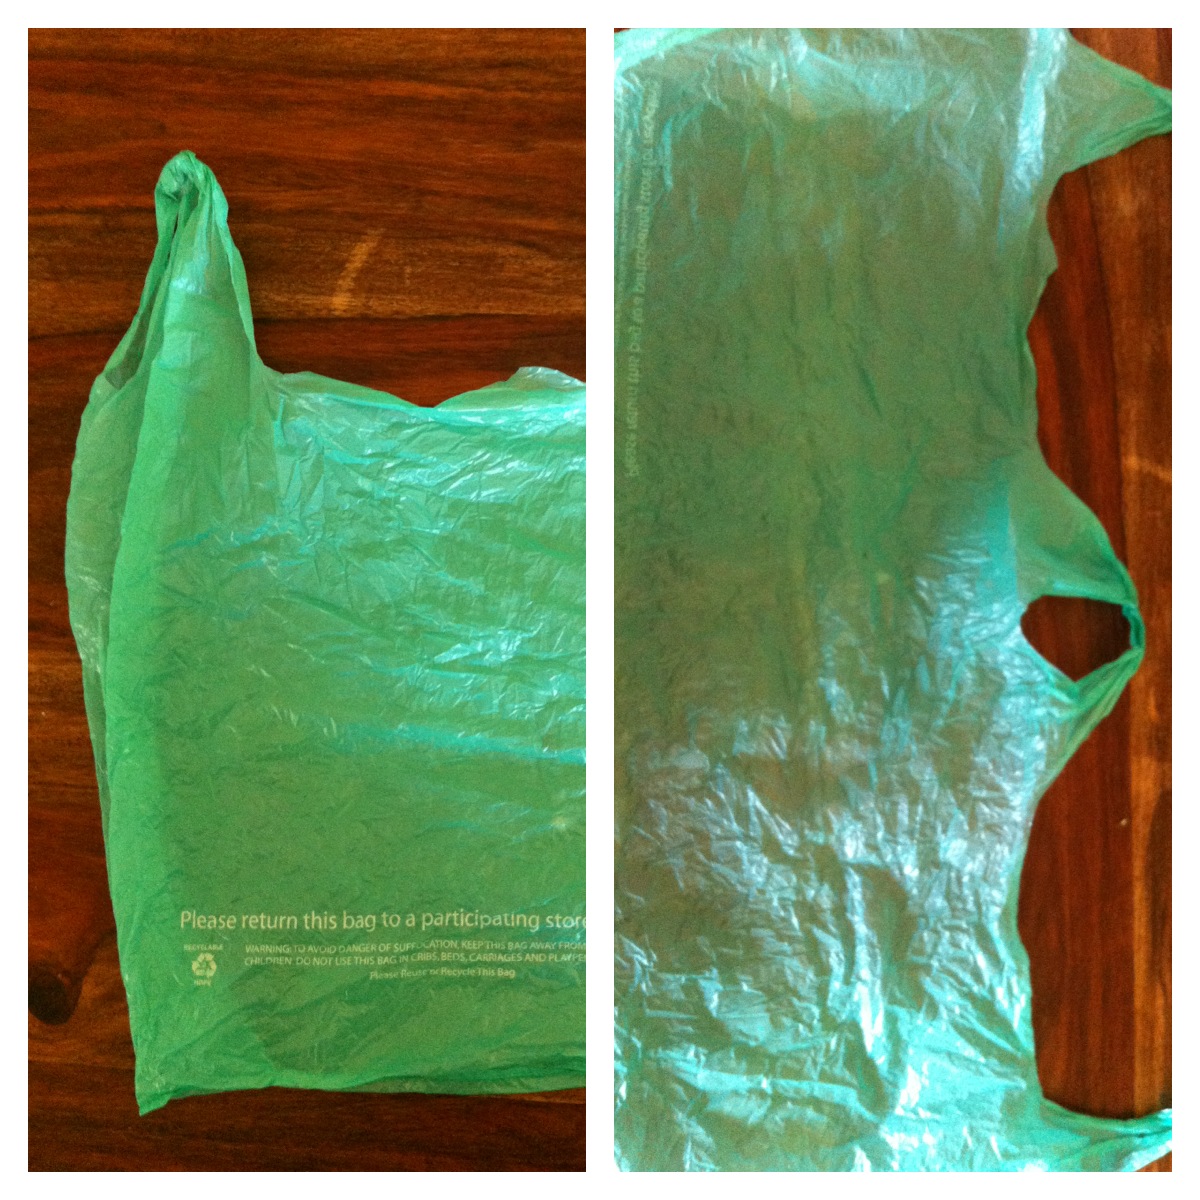 step by step diy plastic bag